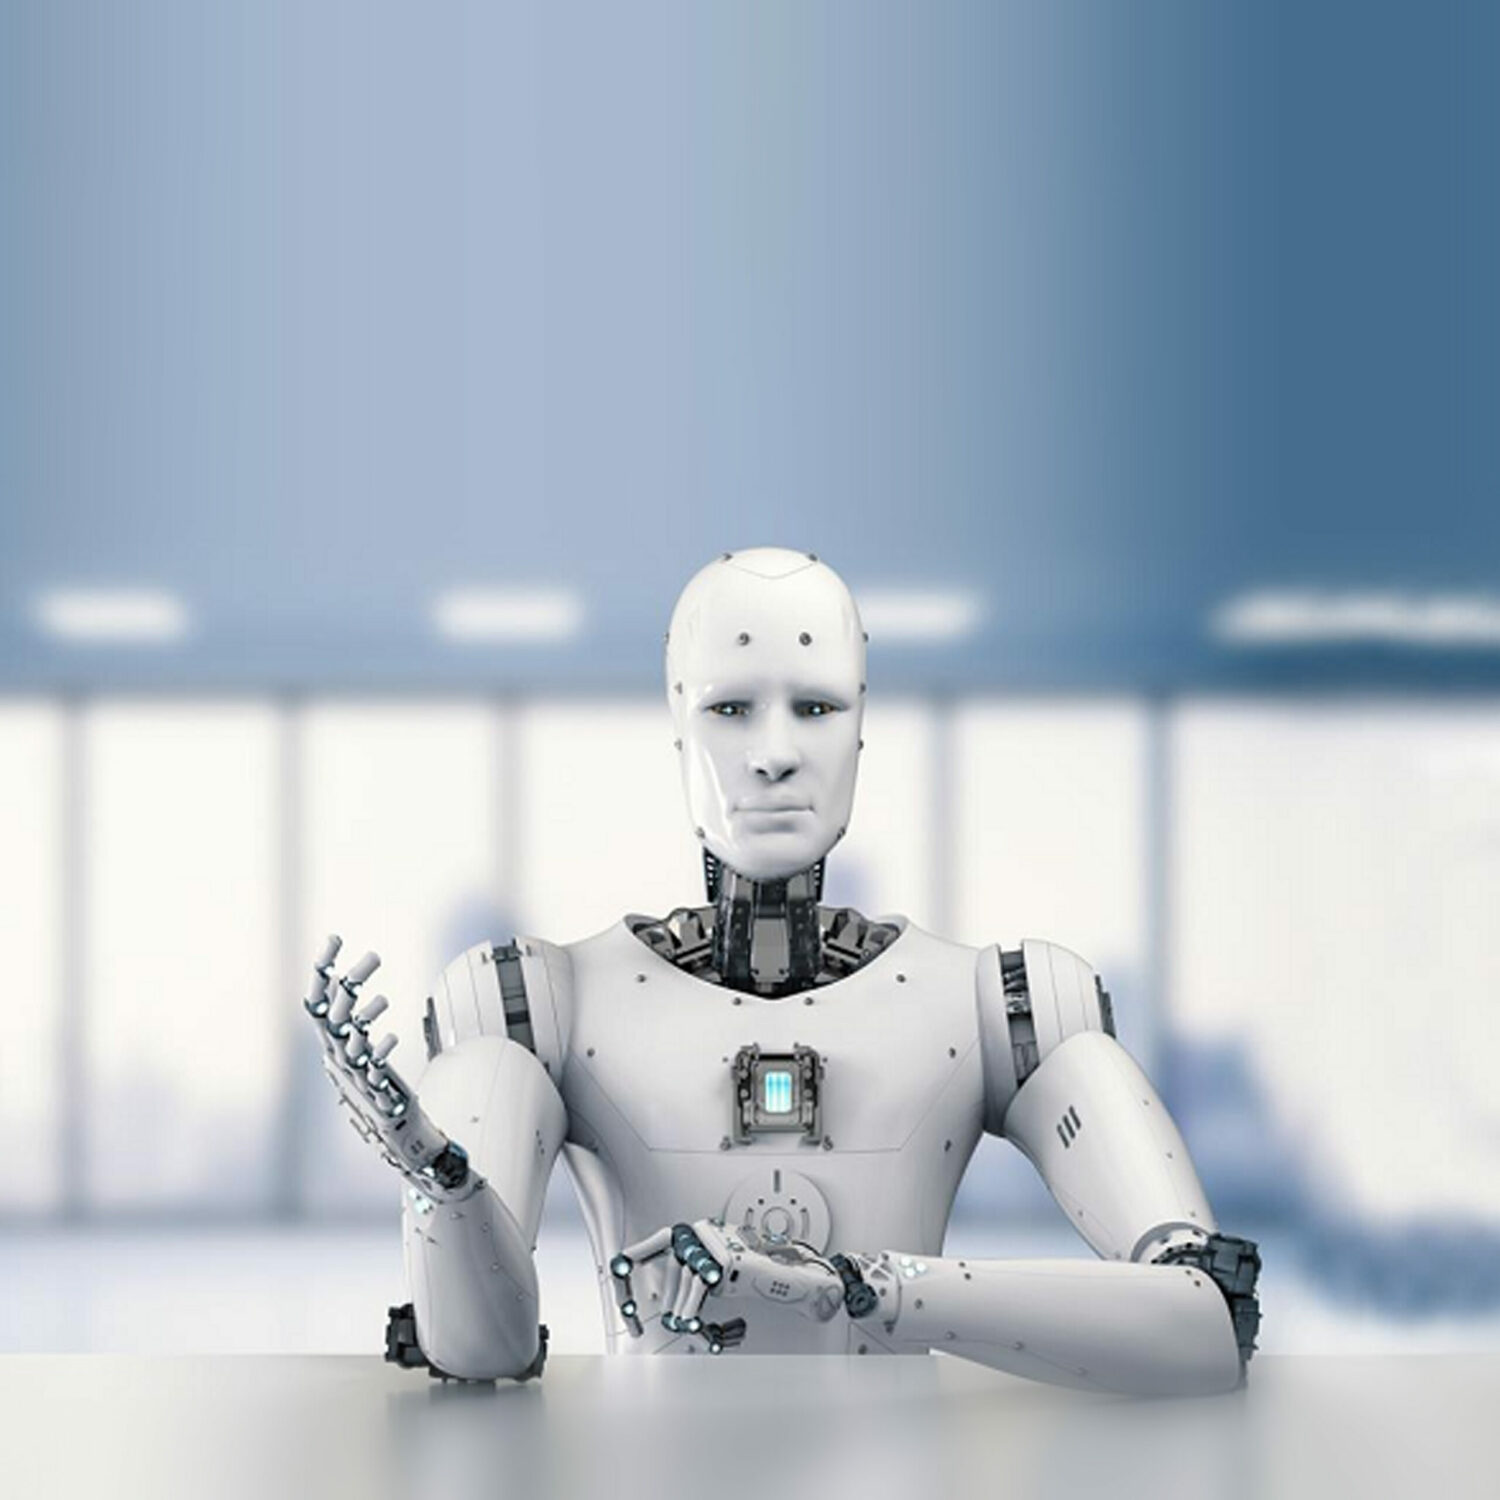 حديث الروبوتات مع نفسها يزيد من ثقة البشر فيها